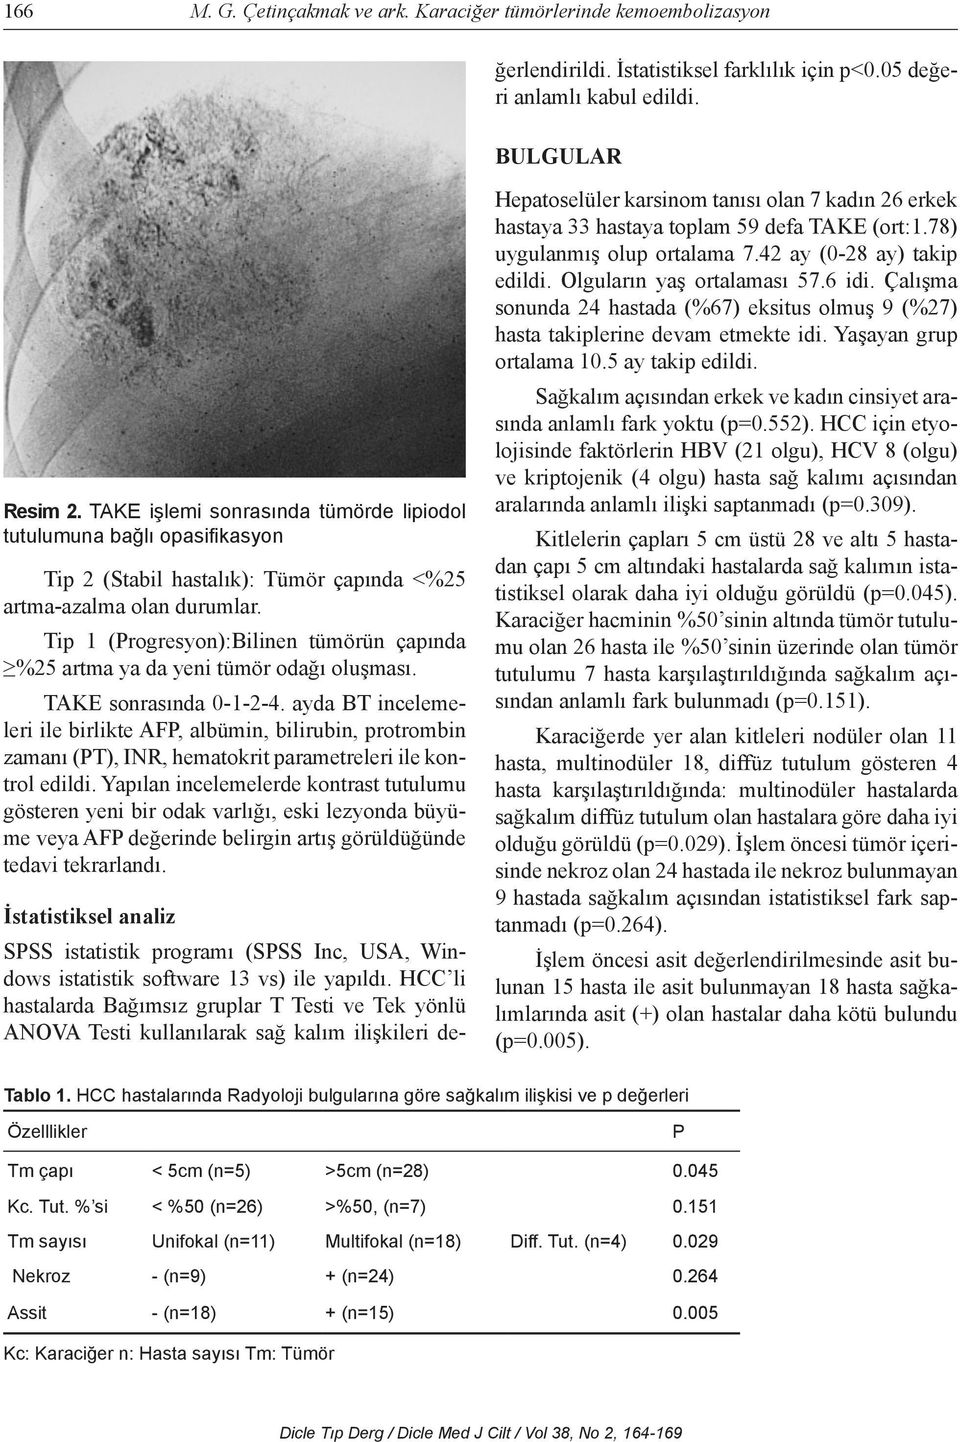 BULGULAR Resim 2. TAKE işlemi sonrasında tümörde lipiodol tutulumuna bağlı opasifikasyon Tip 2 (Stabil hastalık): Tümör çapında <%25 artma-azalma olan durumlar.